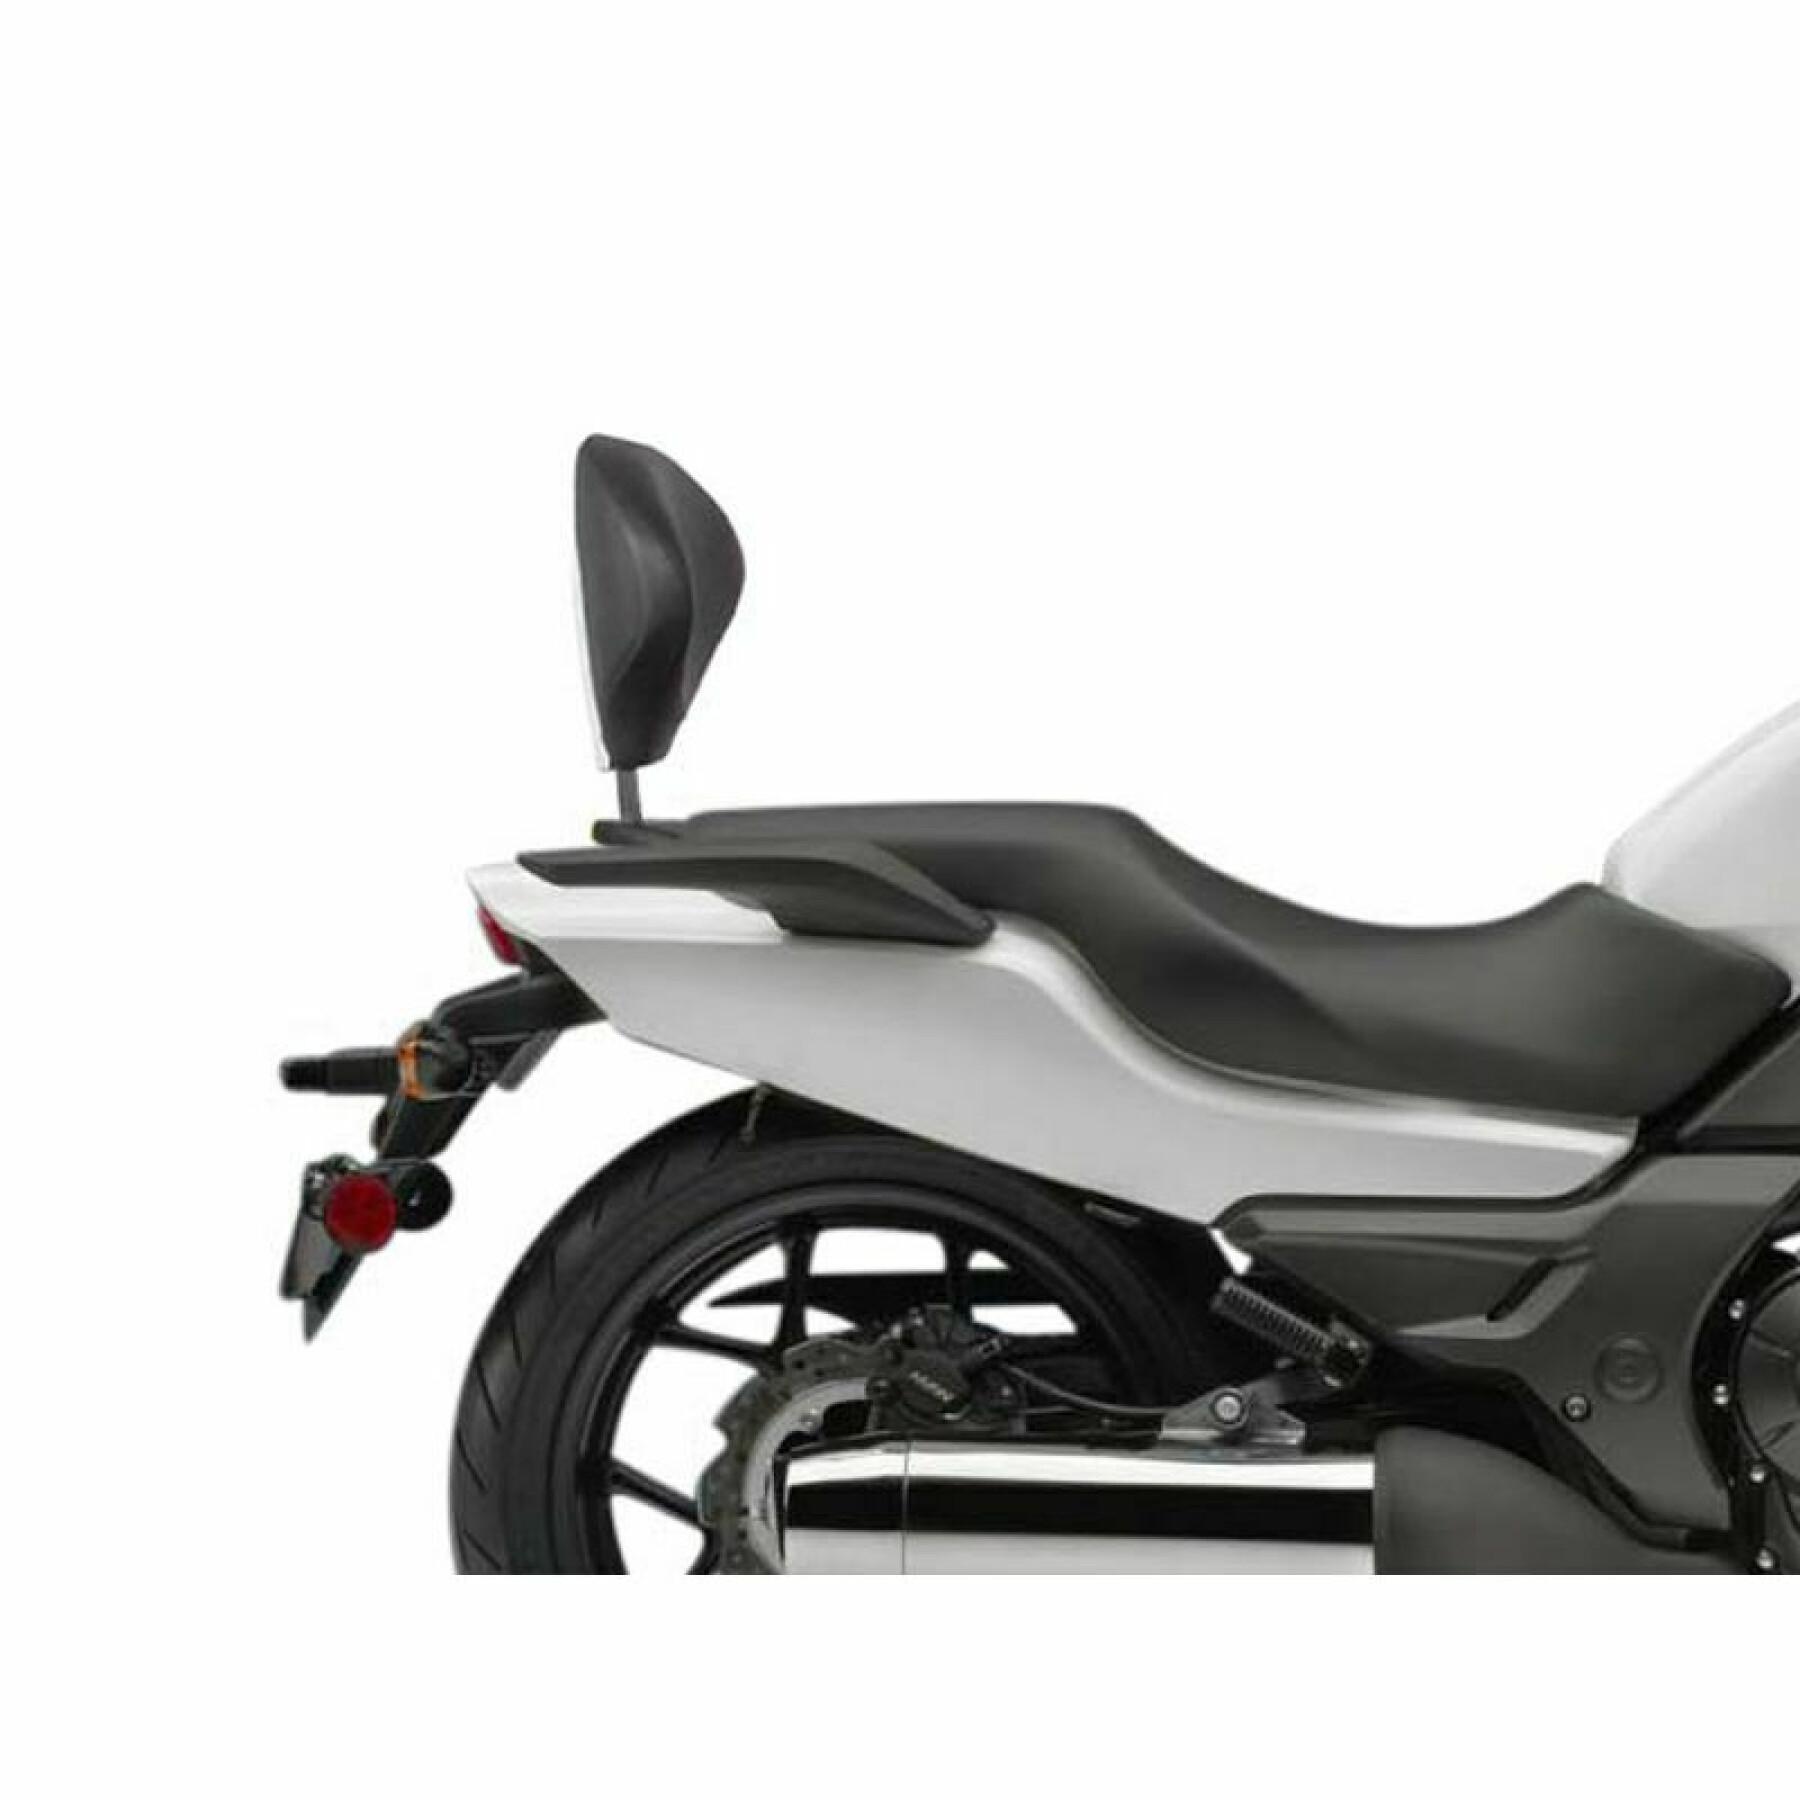 Montering av ryggstöd för motorcykel Shad Honda ctx 700